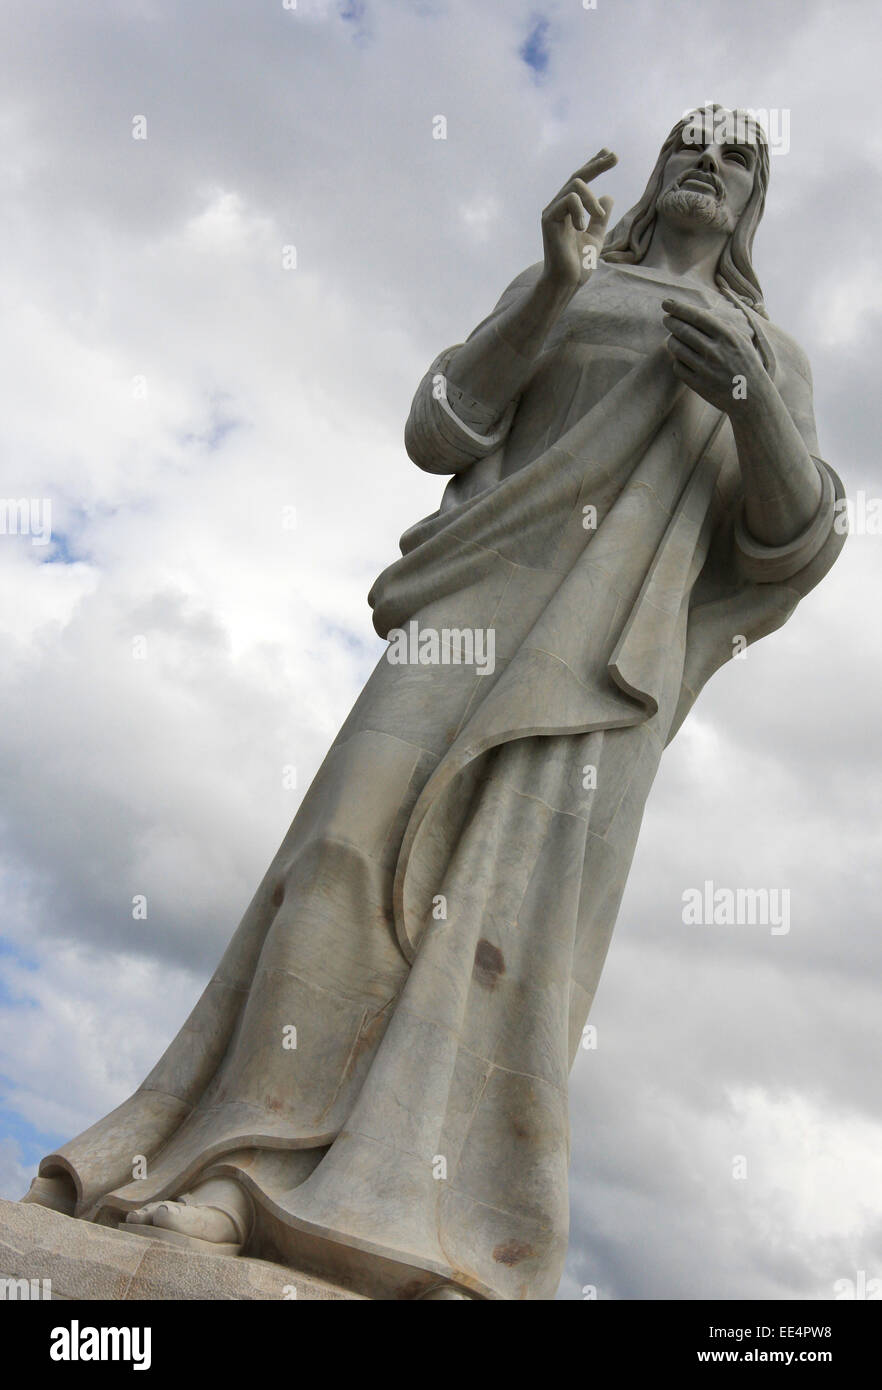 Christ of Havana statue in Havana, Cuba Stock Photo